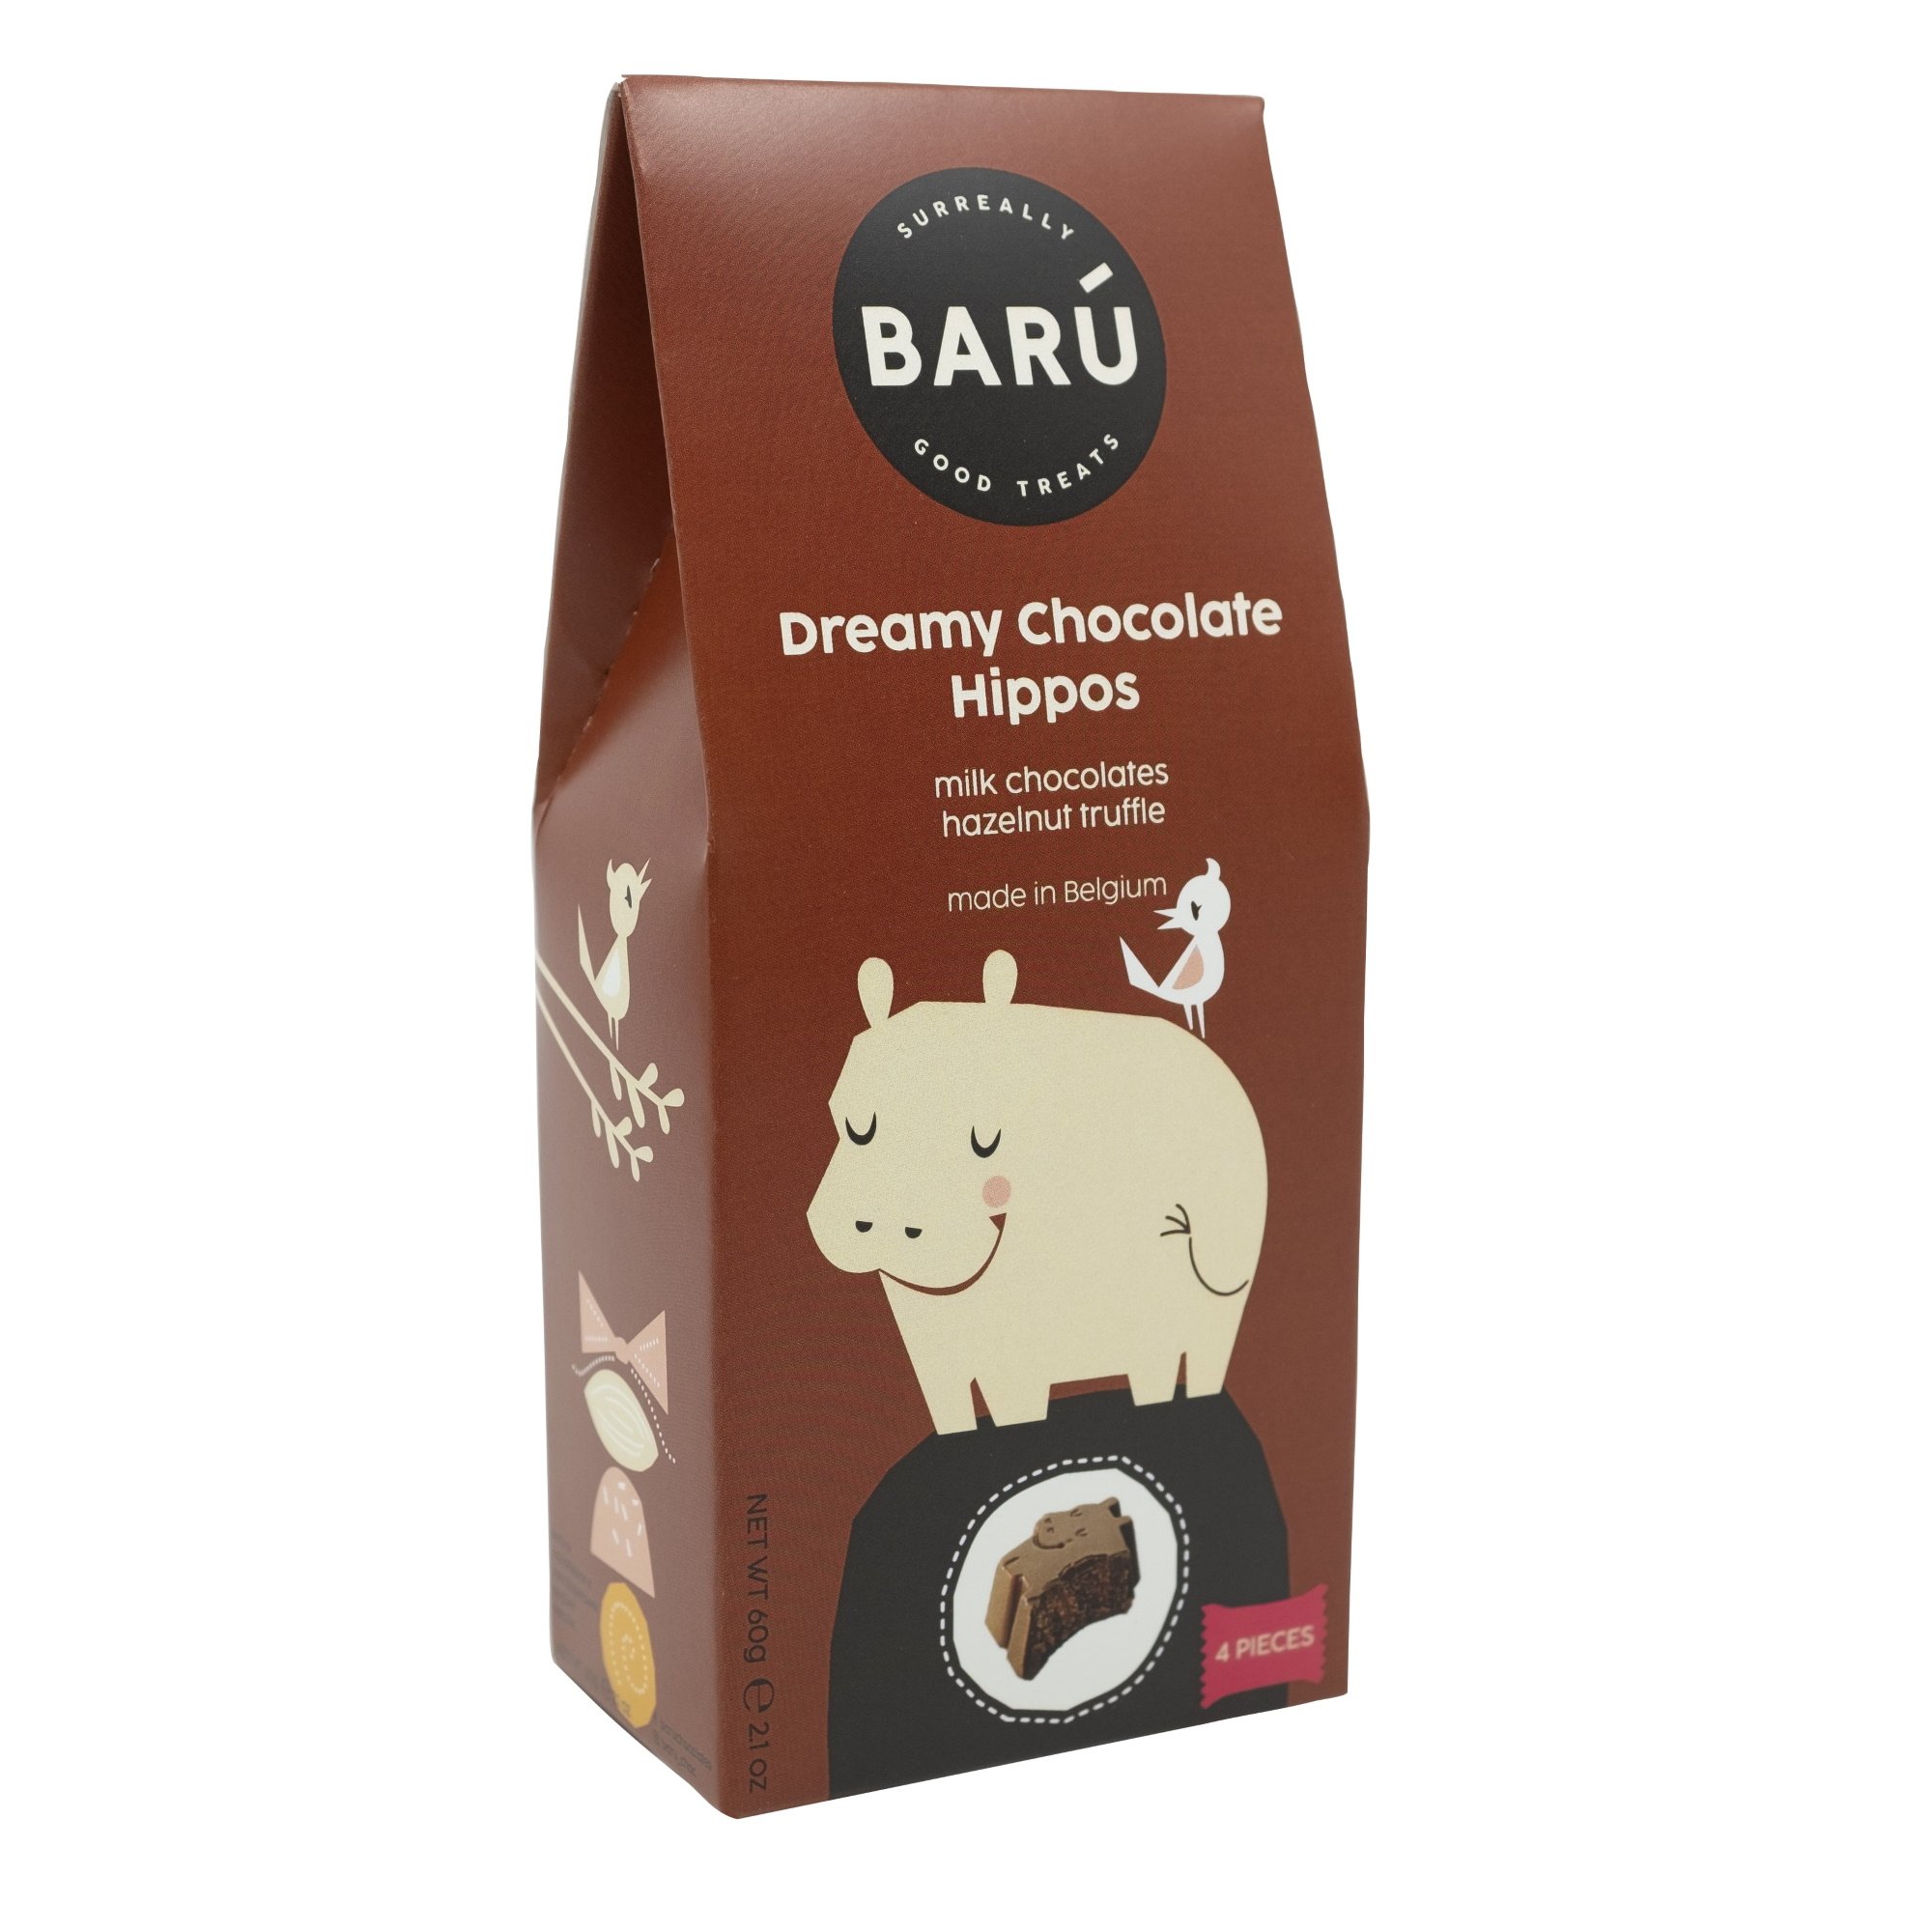 Barú Milk Chocolate Dreamy Chocolate Hippos with Hazelnut Truffle